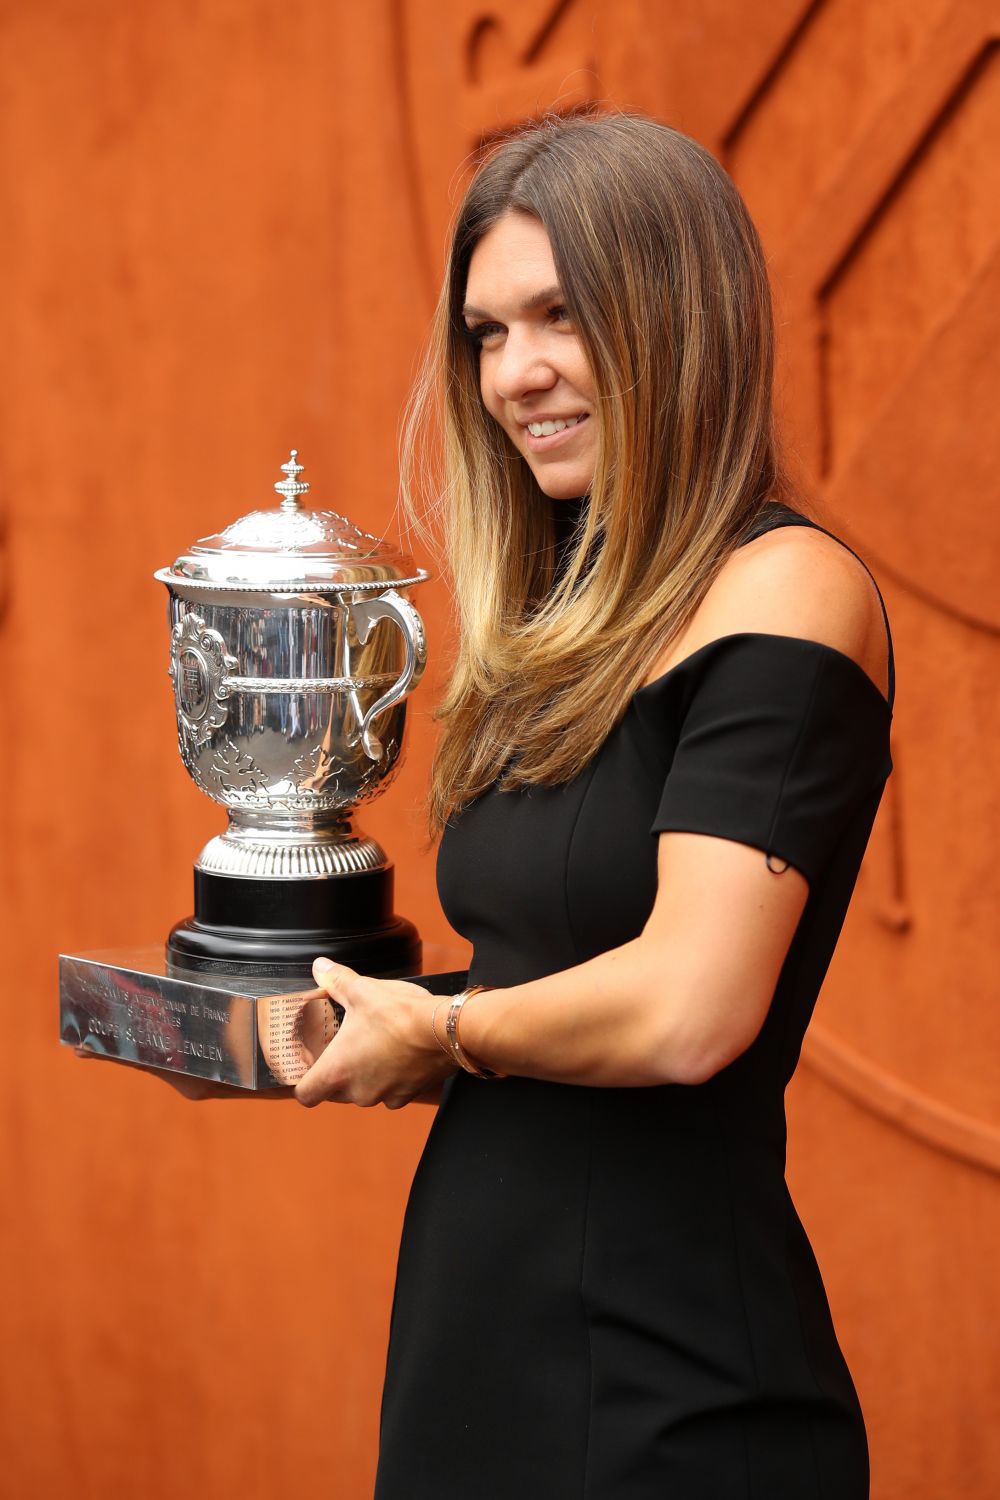 A avut loc sedinta foto a Simonei Halep cu trofeul Roland Garros! Cum s-a imbracat Simona la eveniment FOTO_12